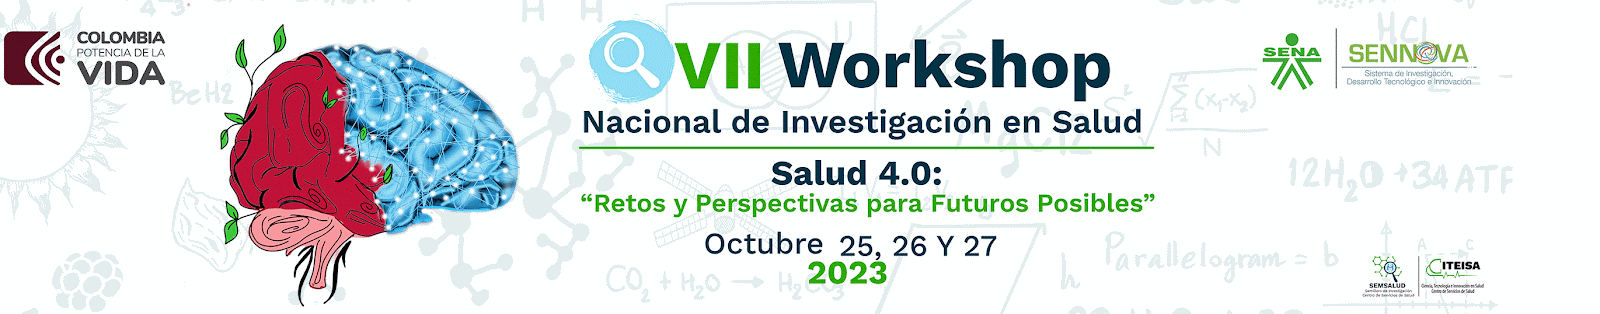 VII Workshop Nacional de Investigación en Salud